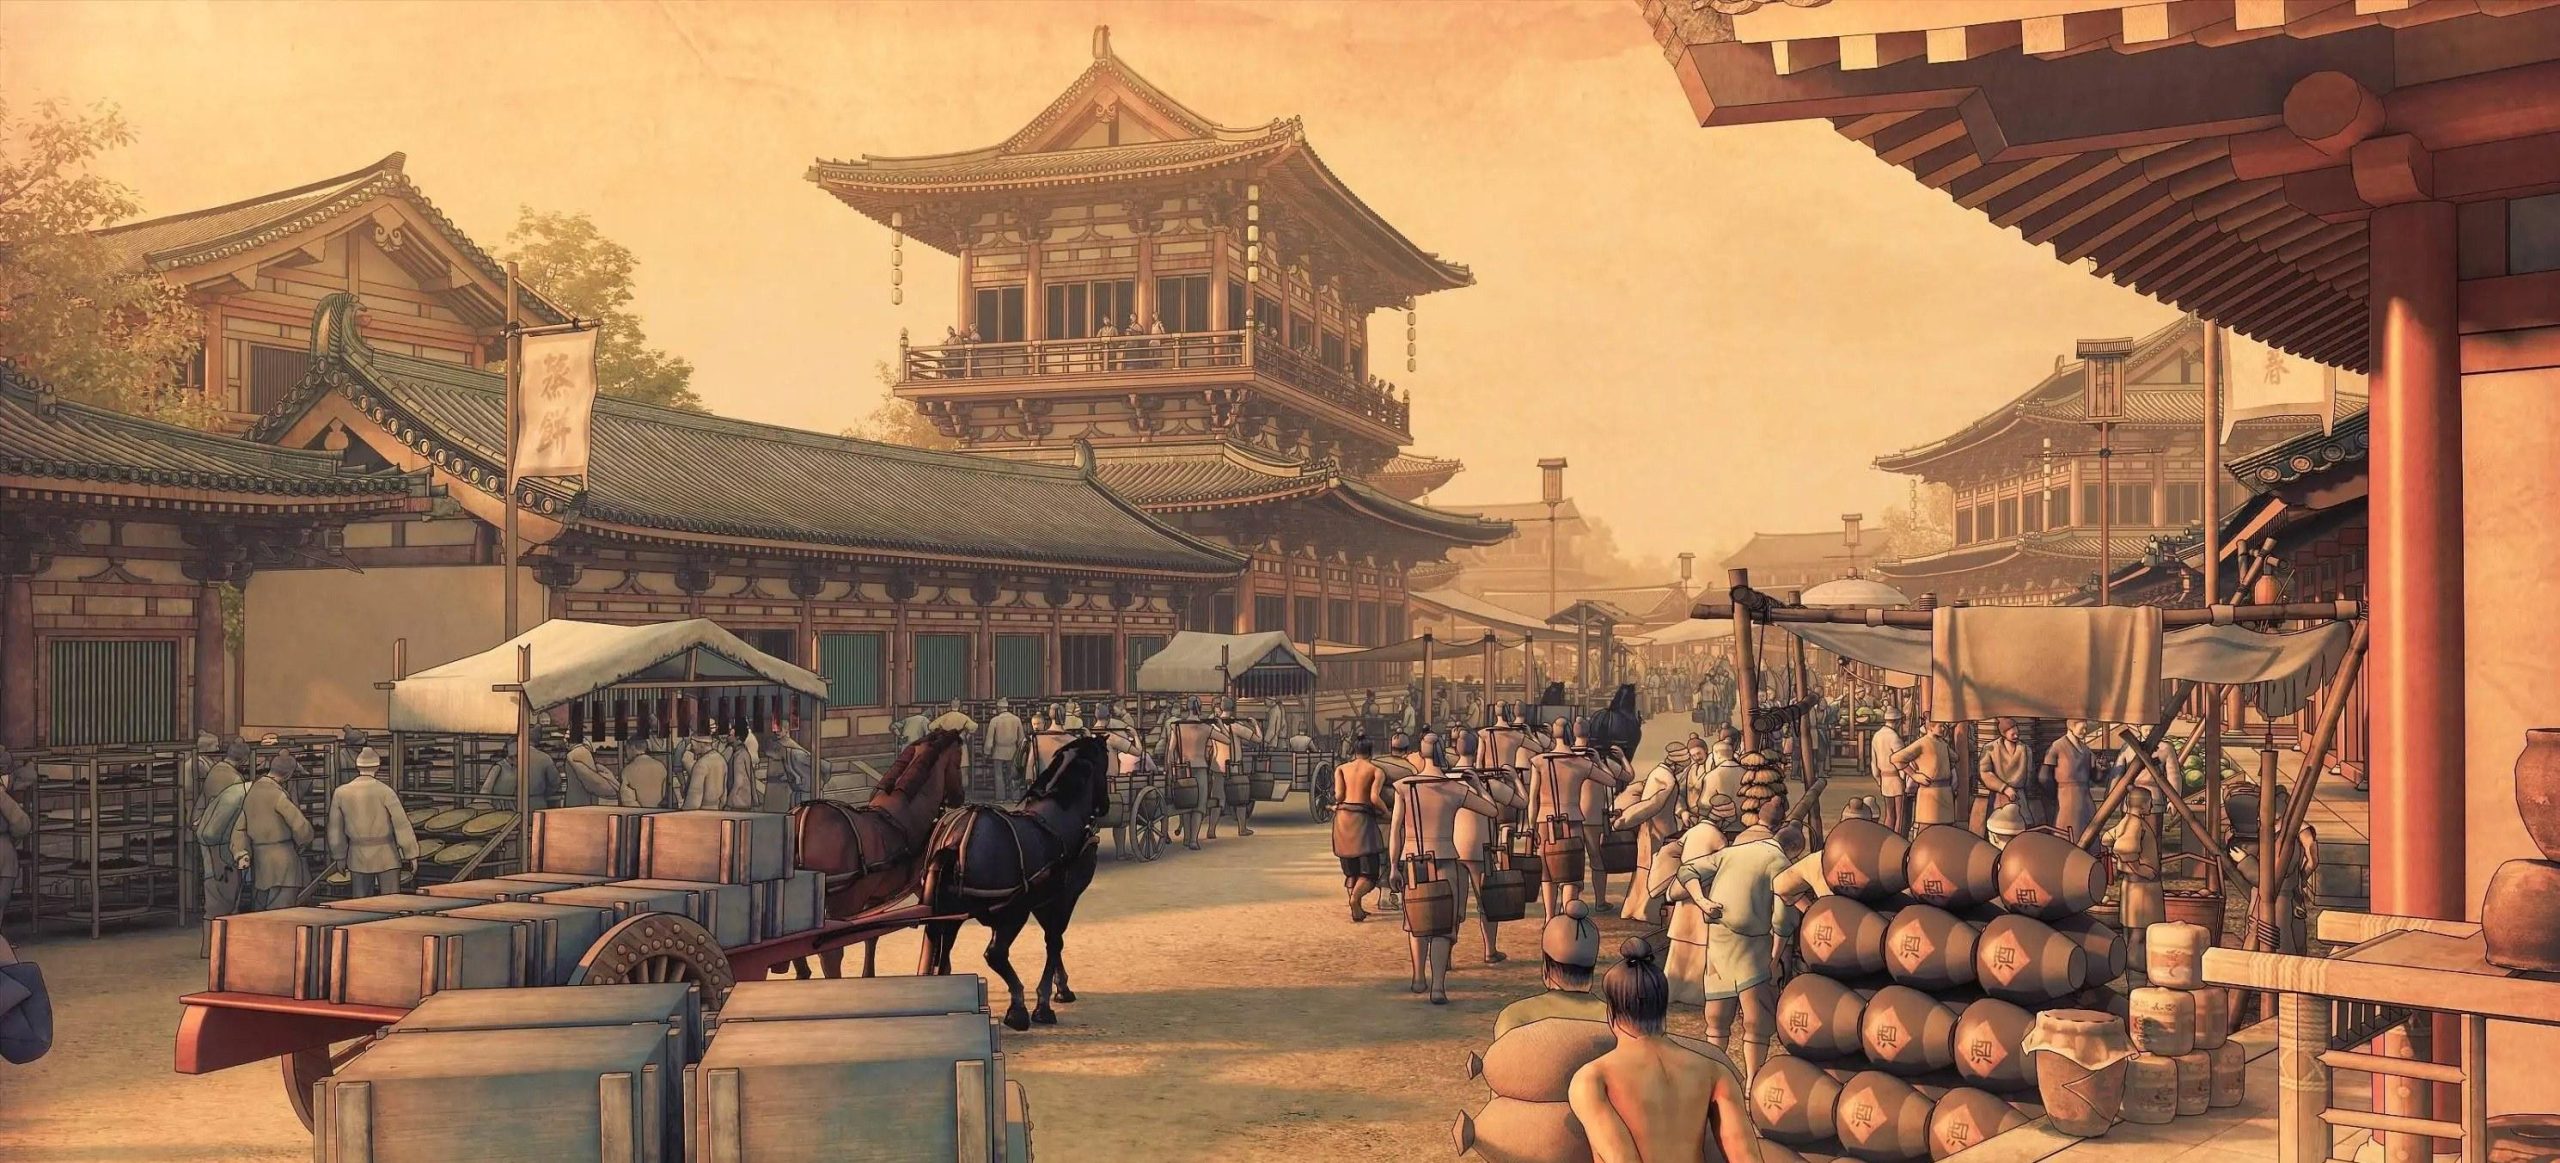 中国版图最大的朝代(中国面积最大的十大历史时期)插图8